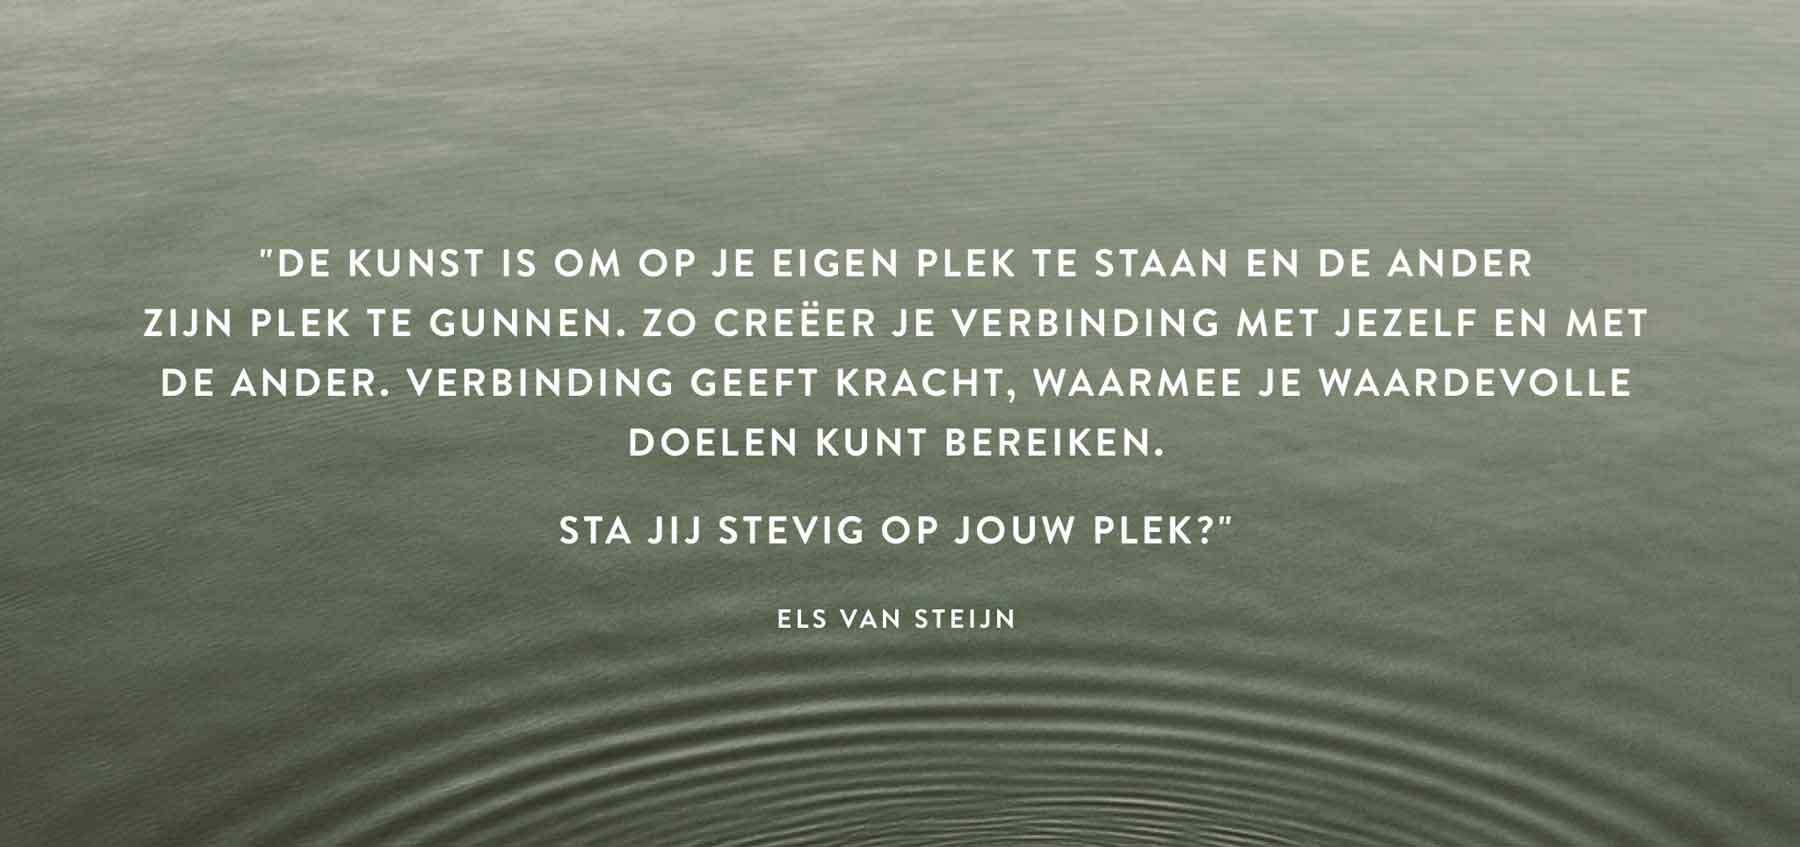 van de website elsvansteijn.nl